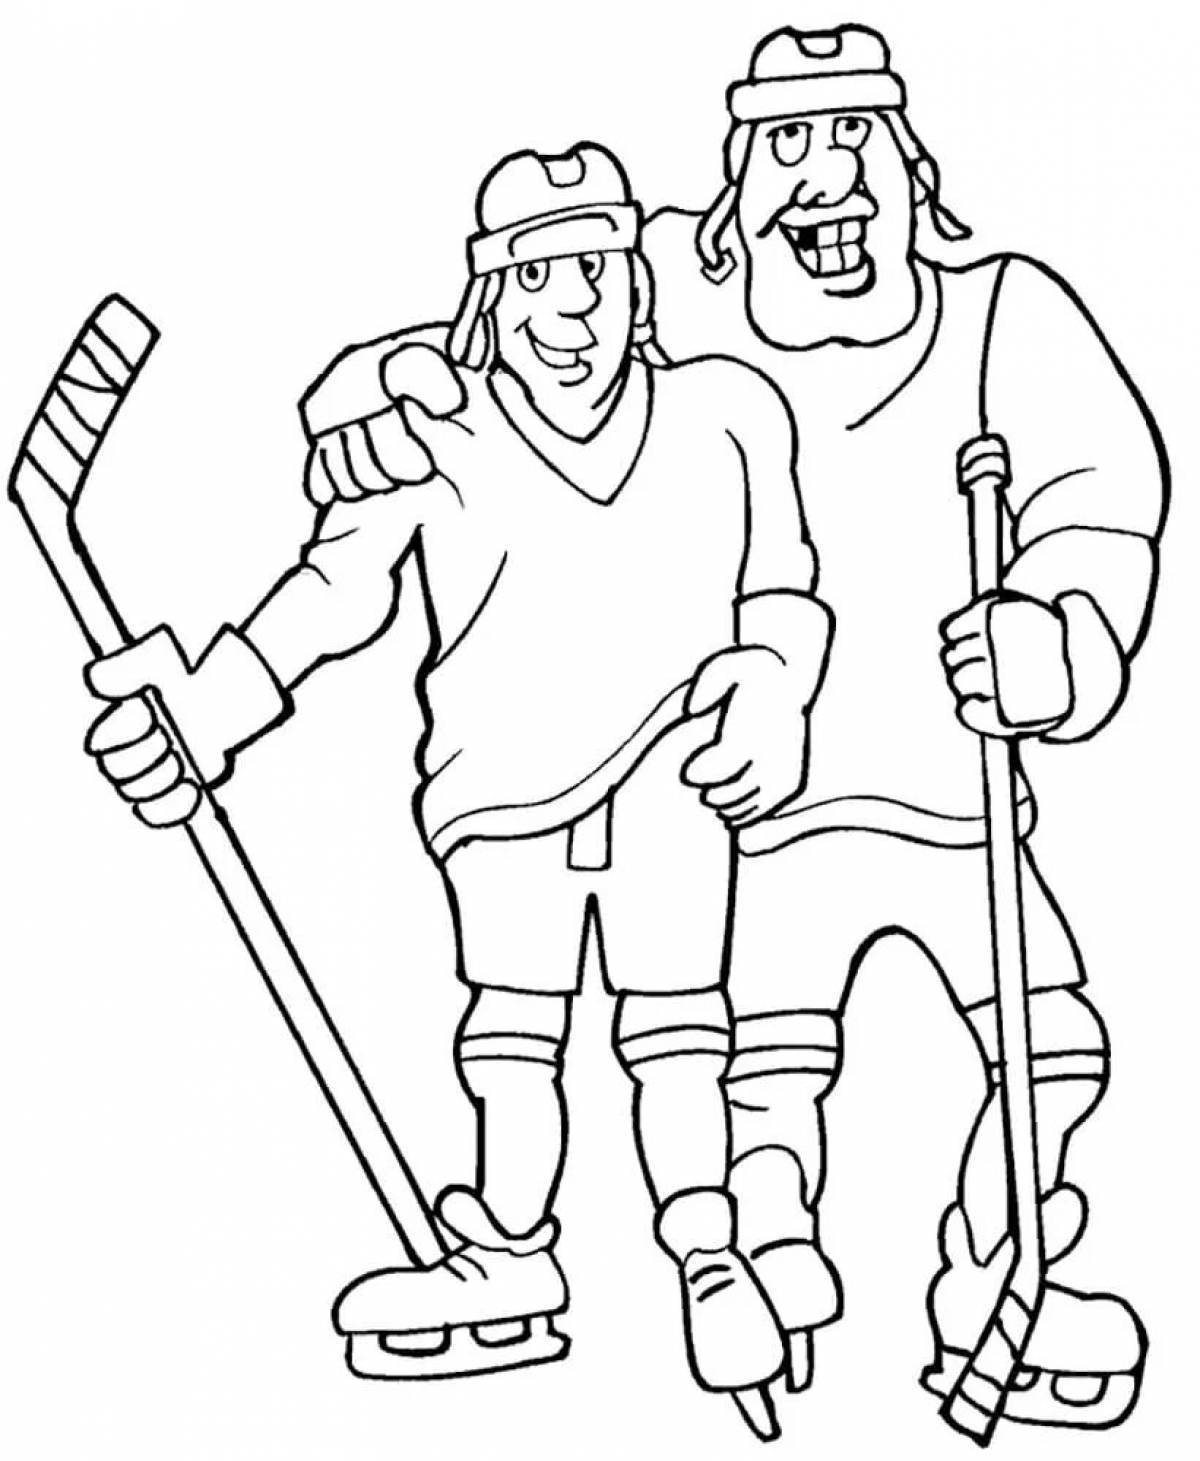 Hockey #6